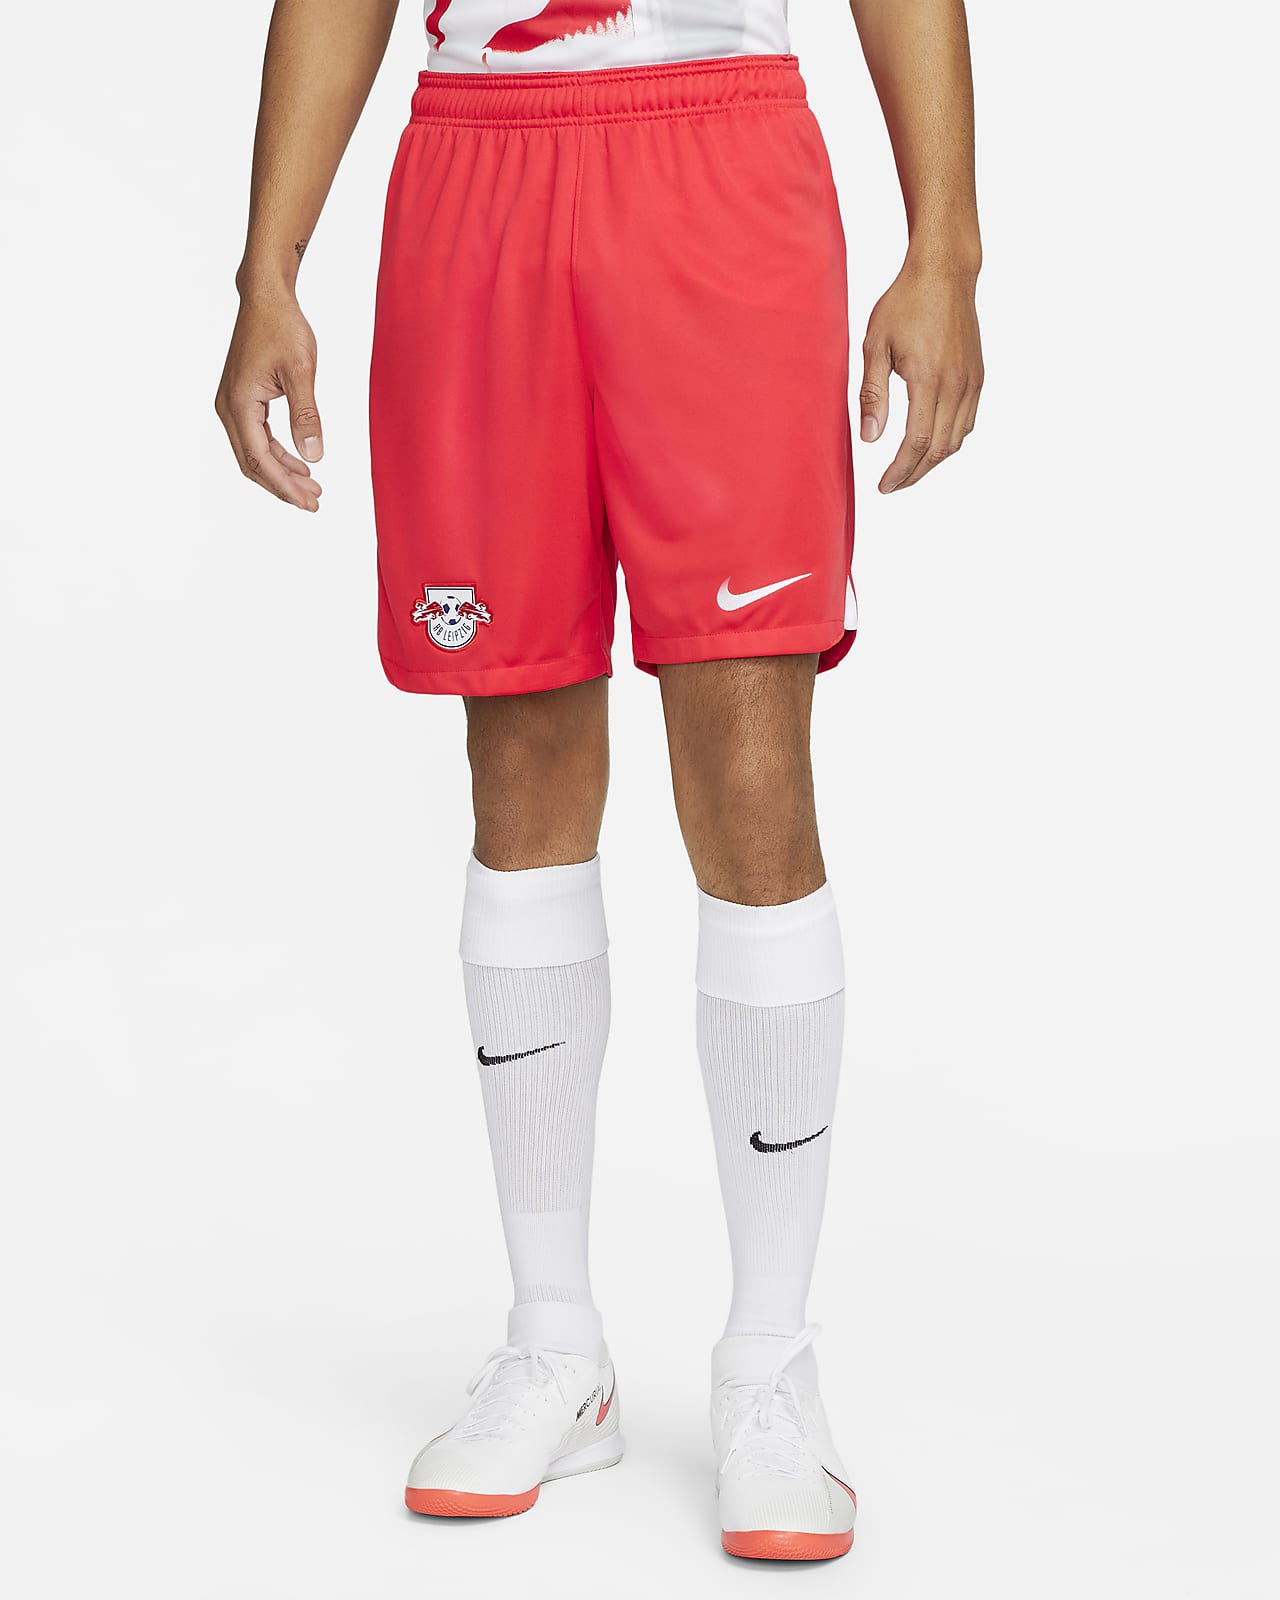 RB Leipzig 2022/23 Nike Third Kit - FOOTBALL FASHION